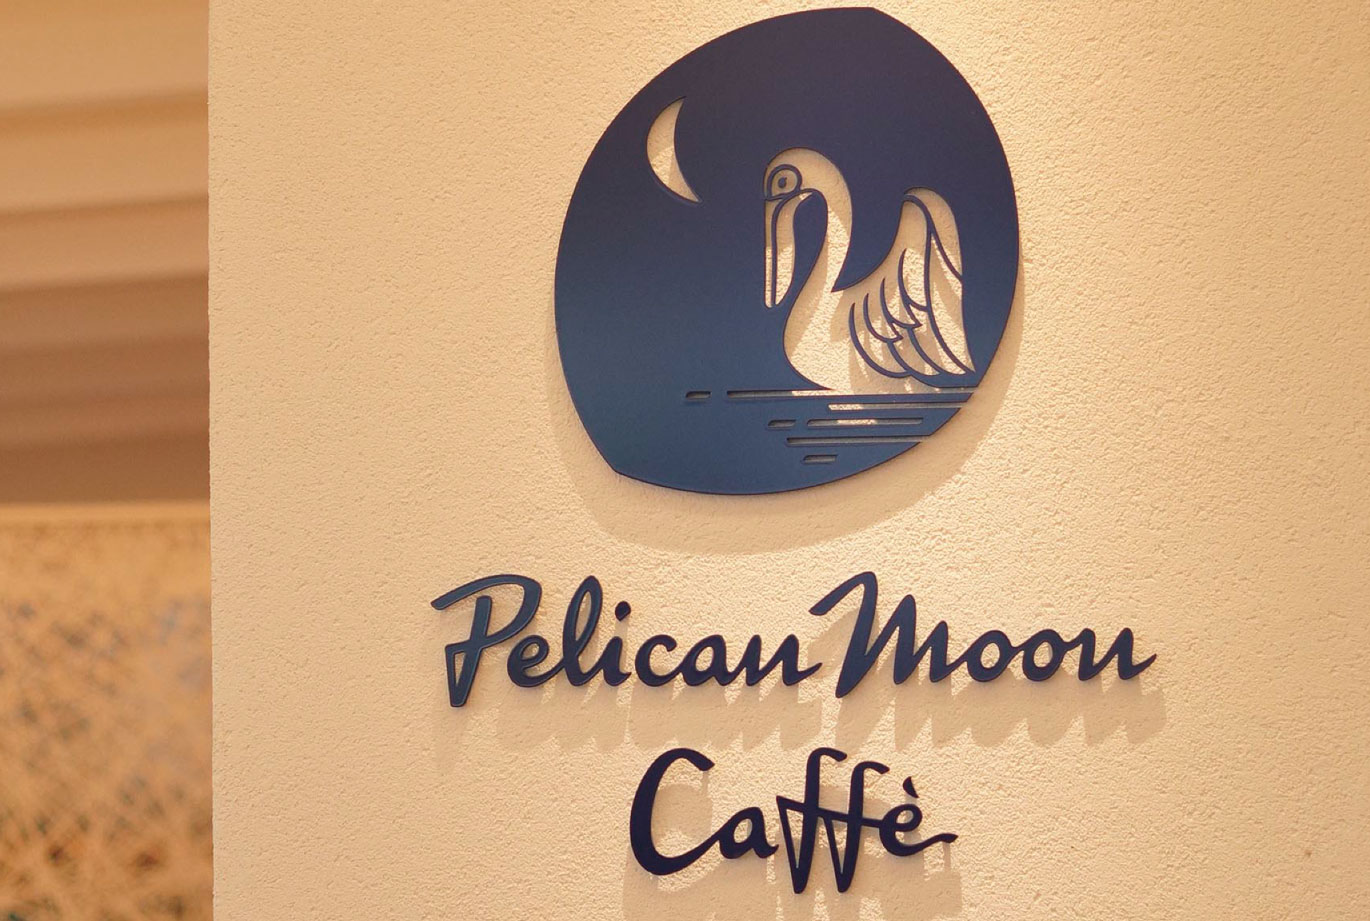 The website of Pelican Moon Cafe has been opened.